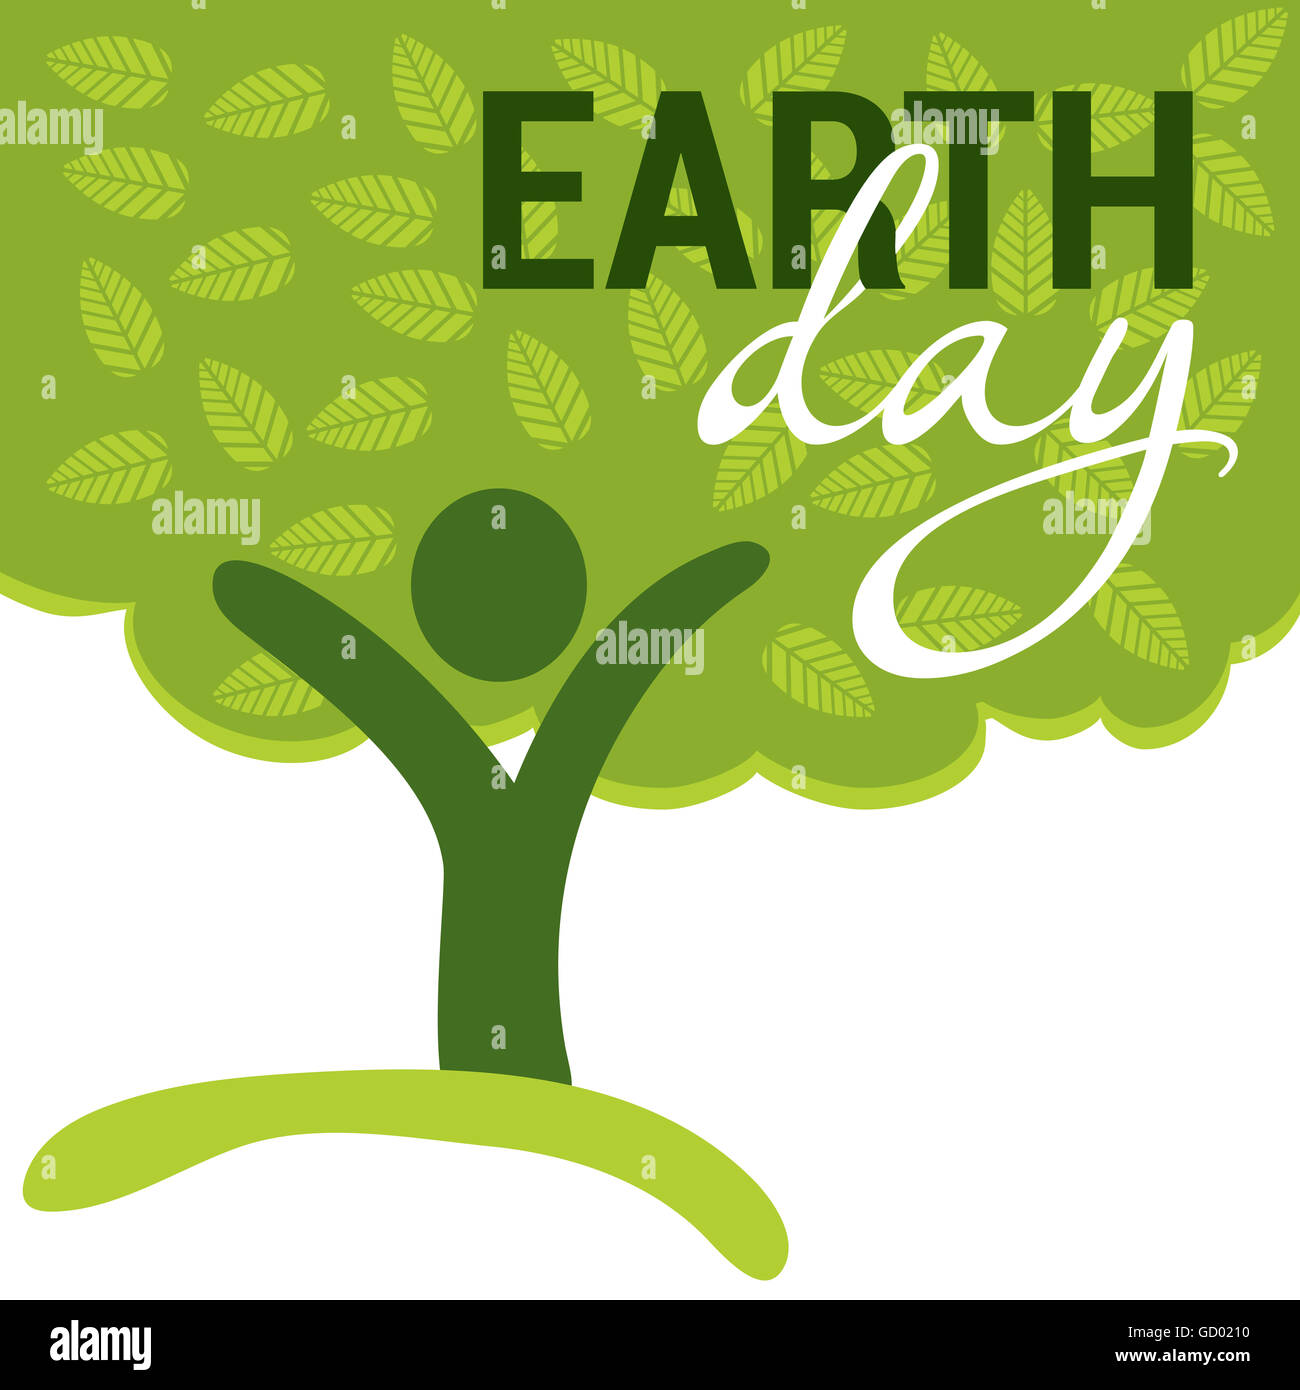 Felicitación del Día de la tierra con árbol abstracto como figura humana Foto de stock